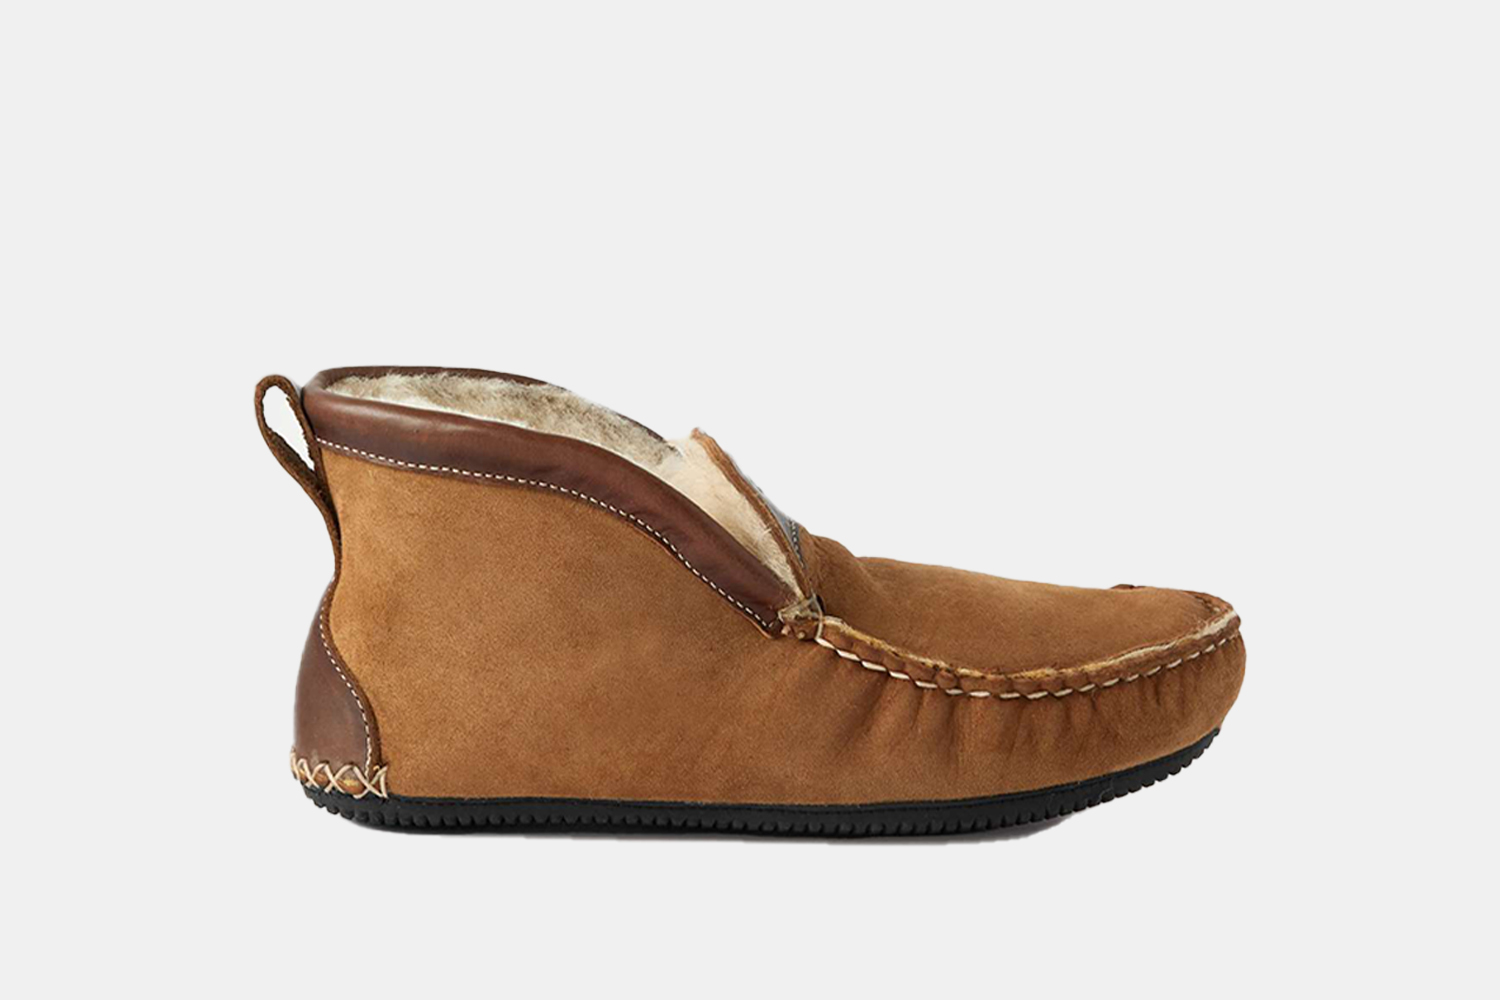 a leather, high cut slipper